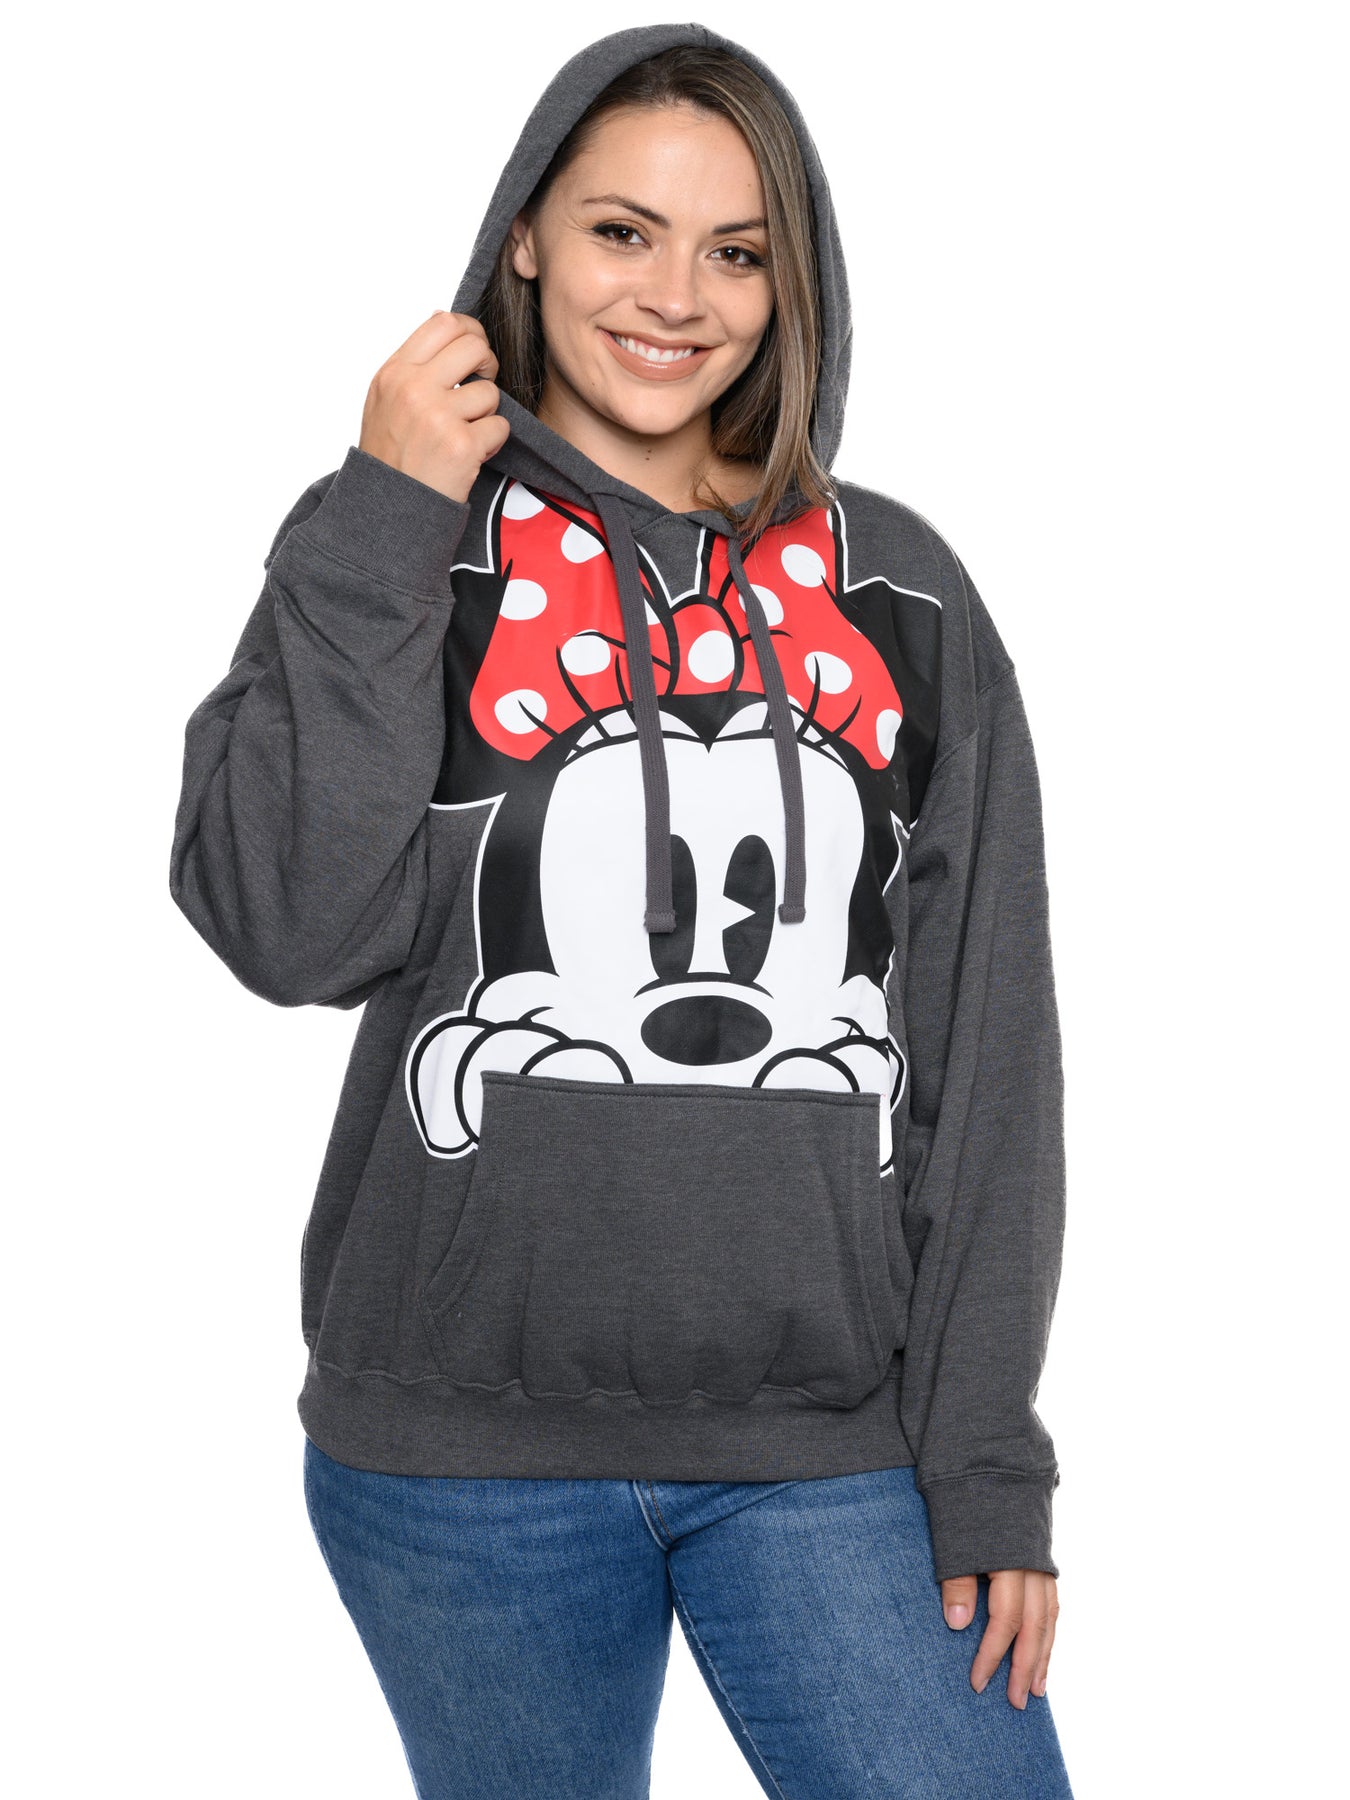 Disney Women's Licensed Floral Embroidery Fleece Sweatshirt Hoodie